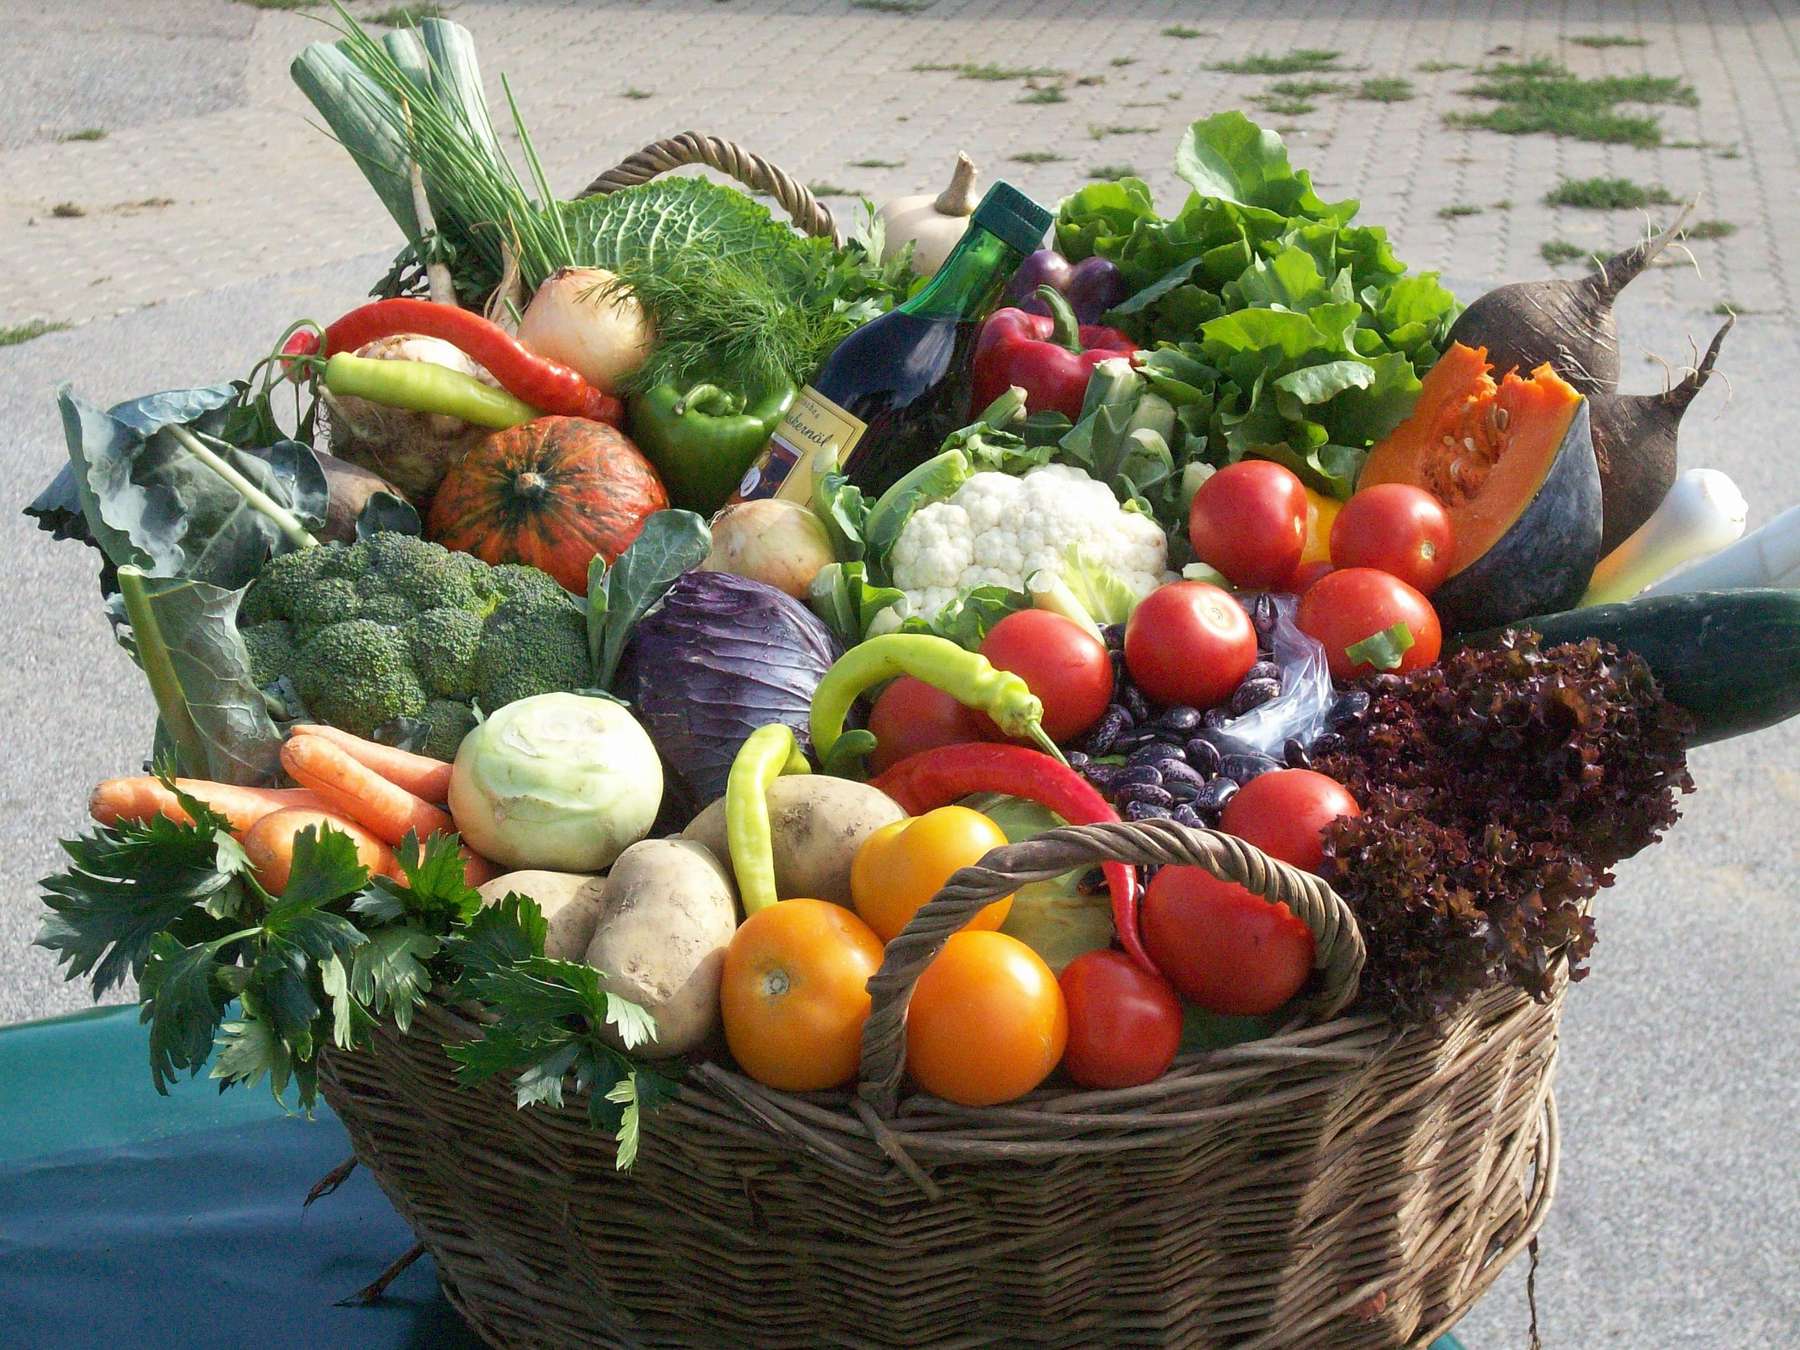 Obst und Gemüse im Korb.jpg